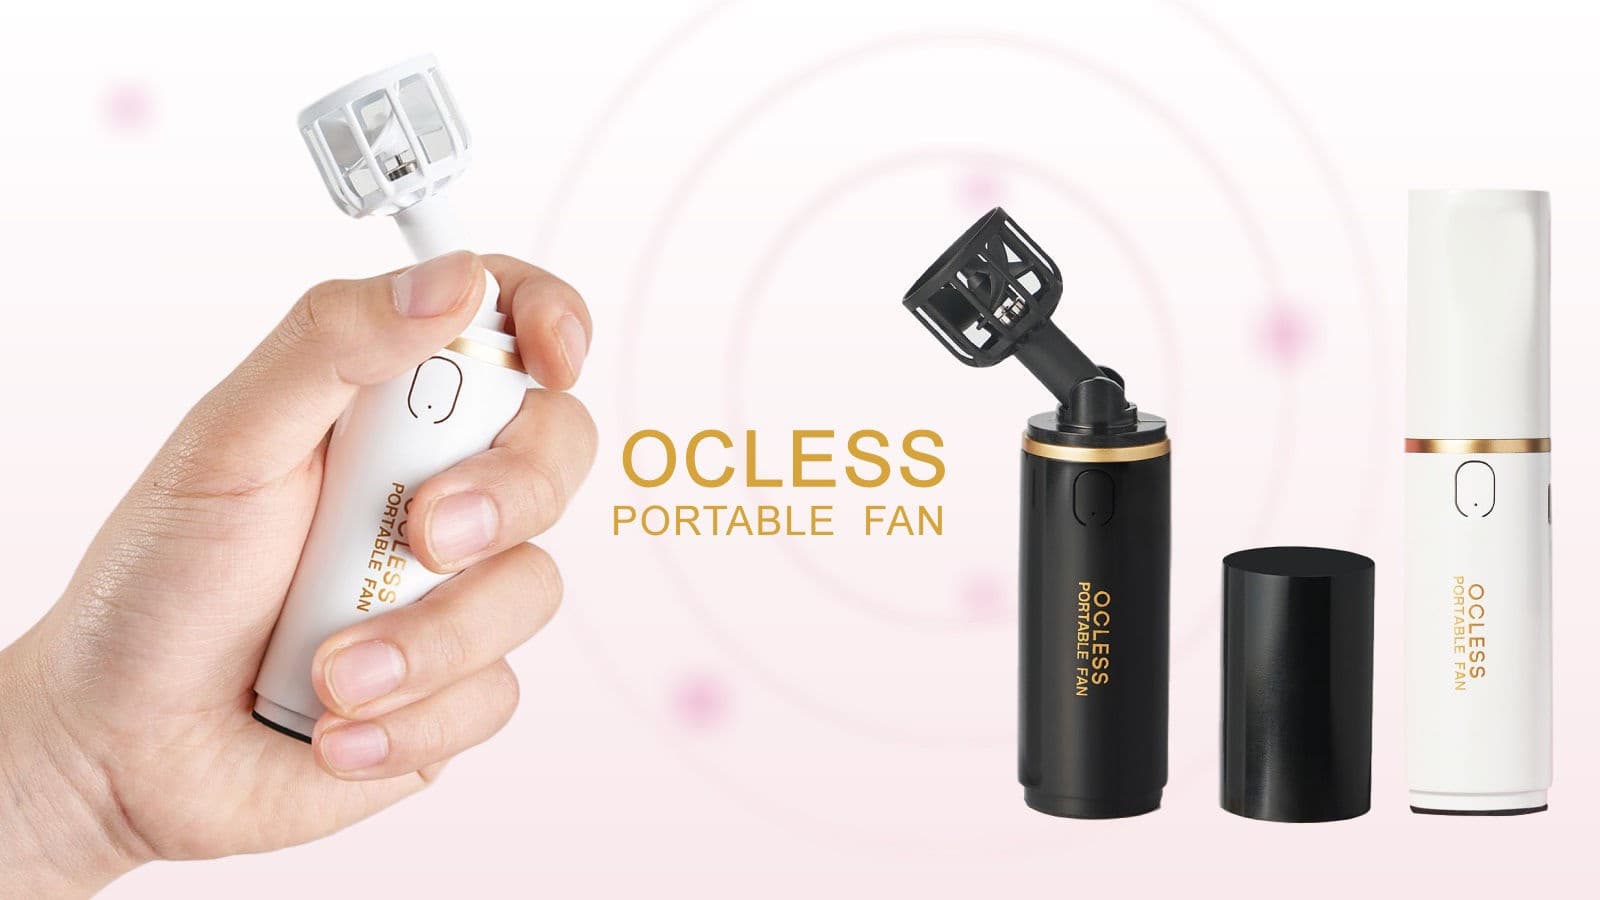 OCLESS Portable fan